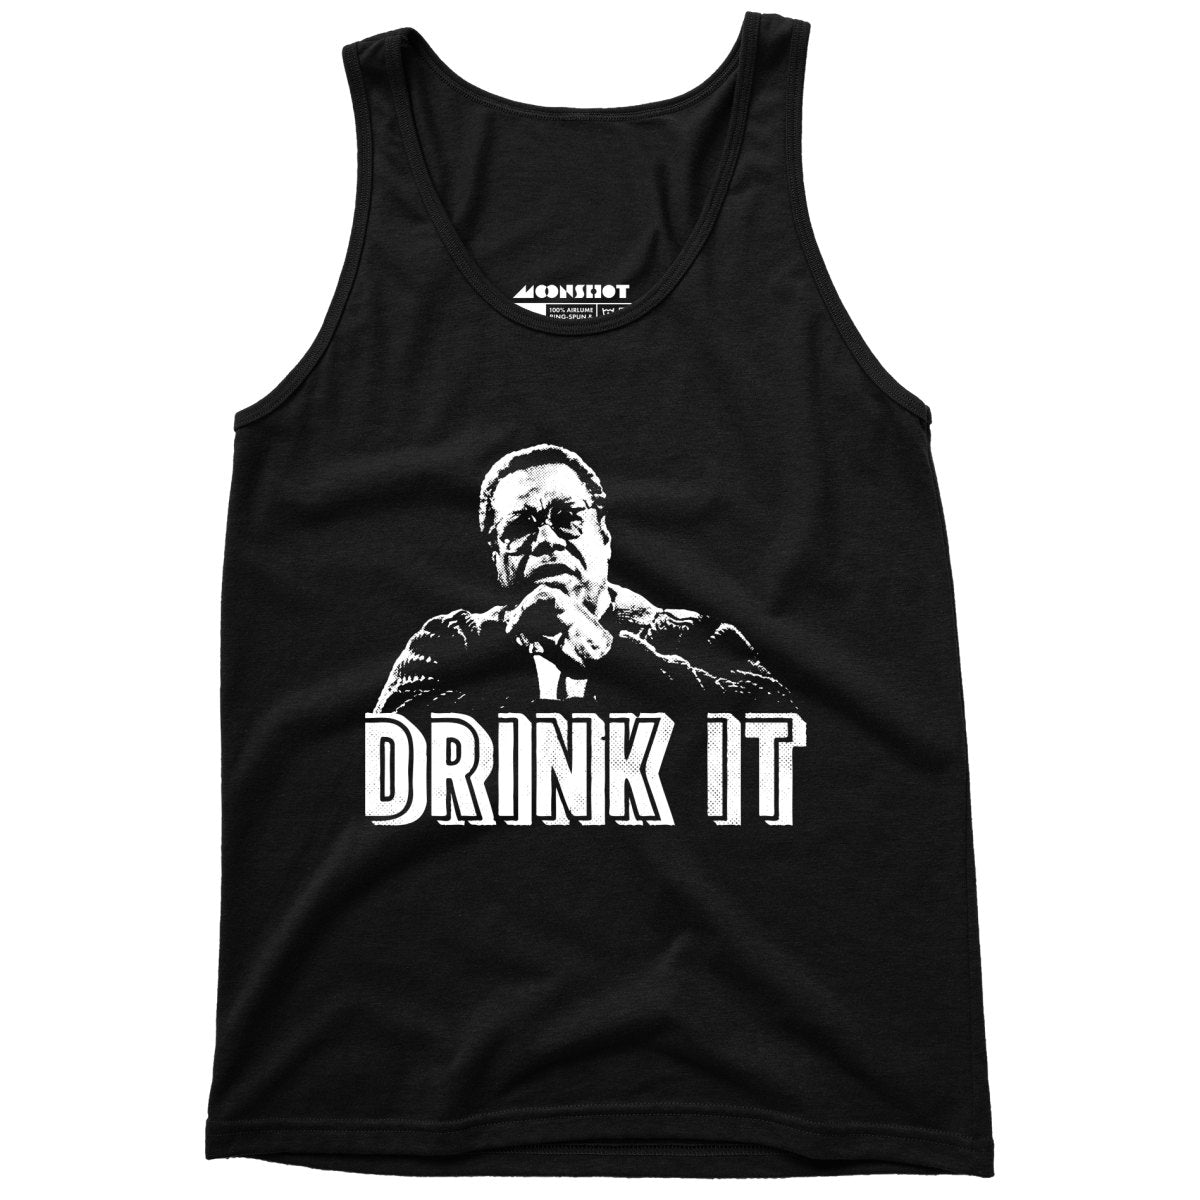 Drink It! - Unisex Tank Top